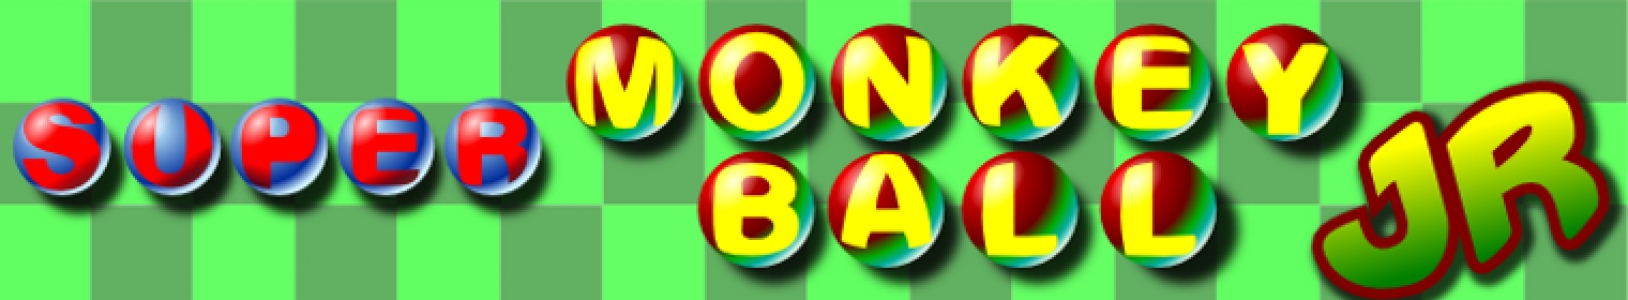 Super Monkey Ball Jr. banner